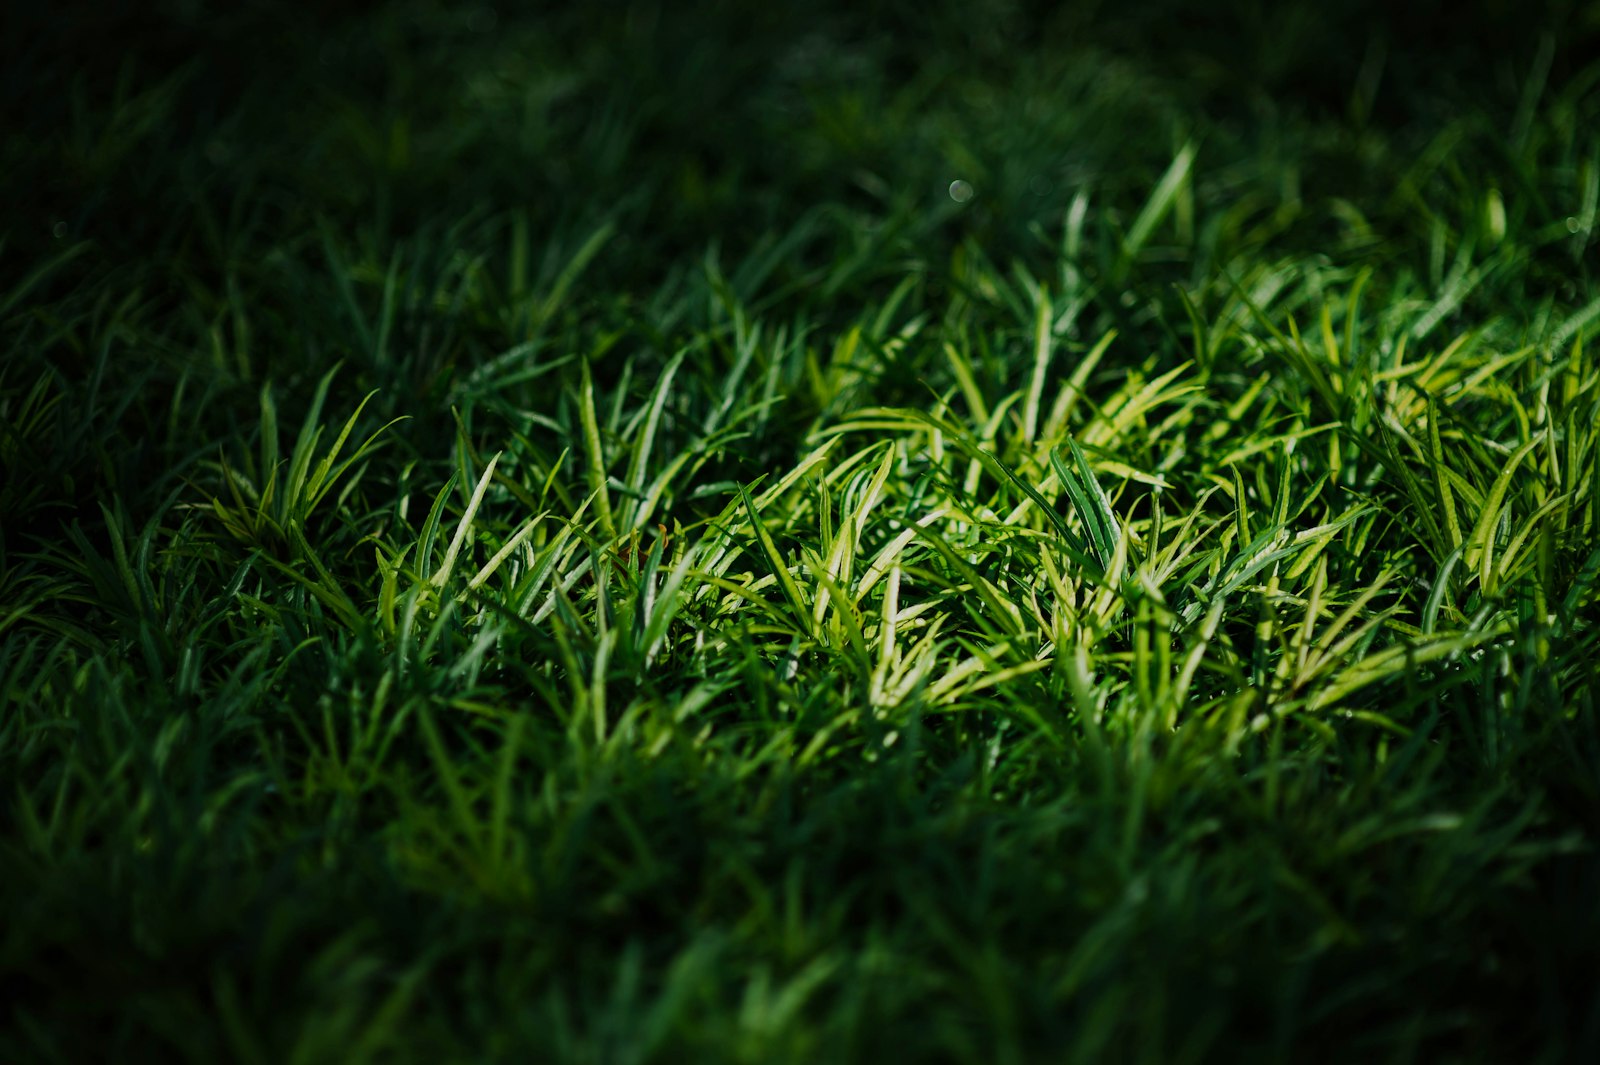 Nikon D4 sample photo. Closeup photography of green photography